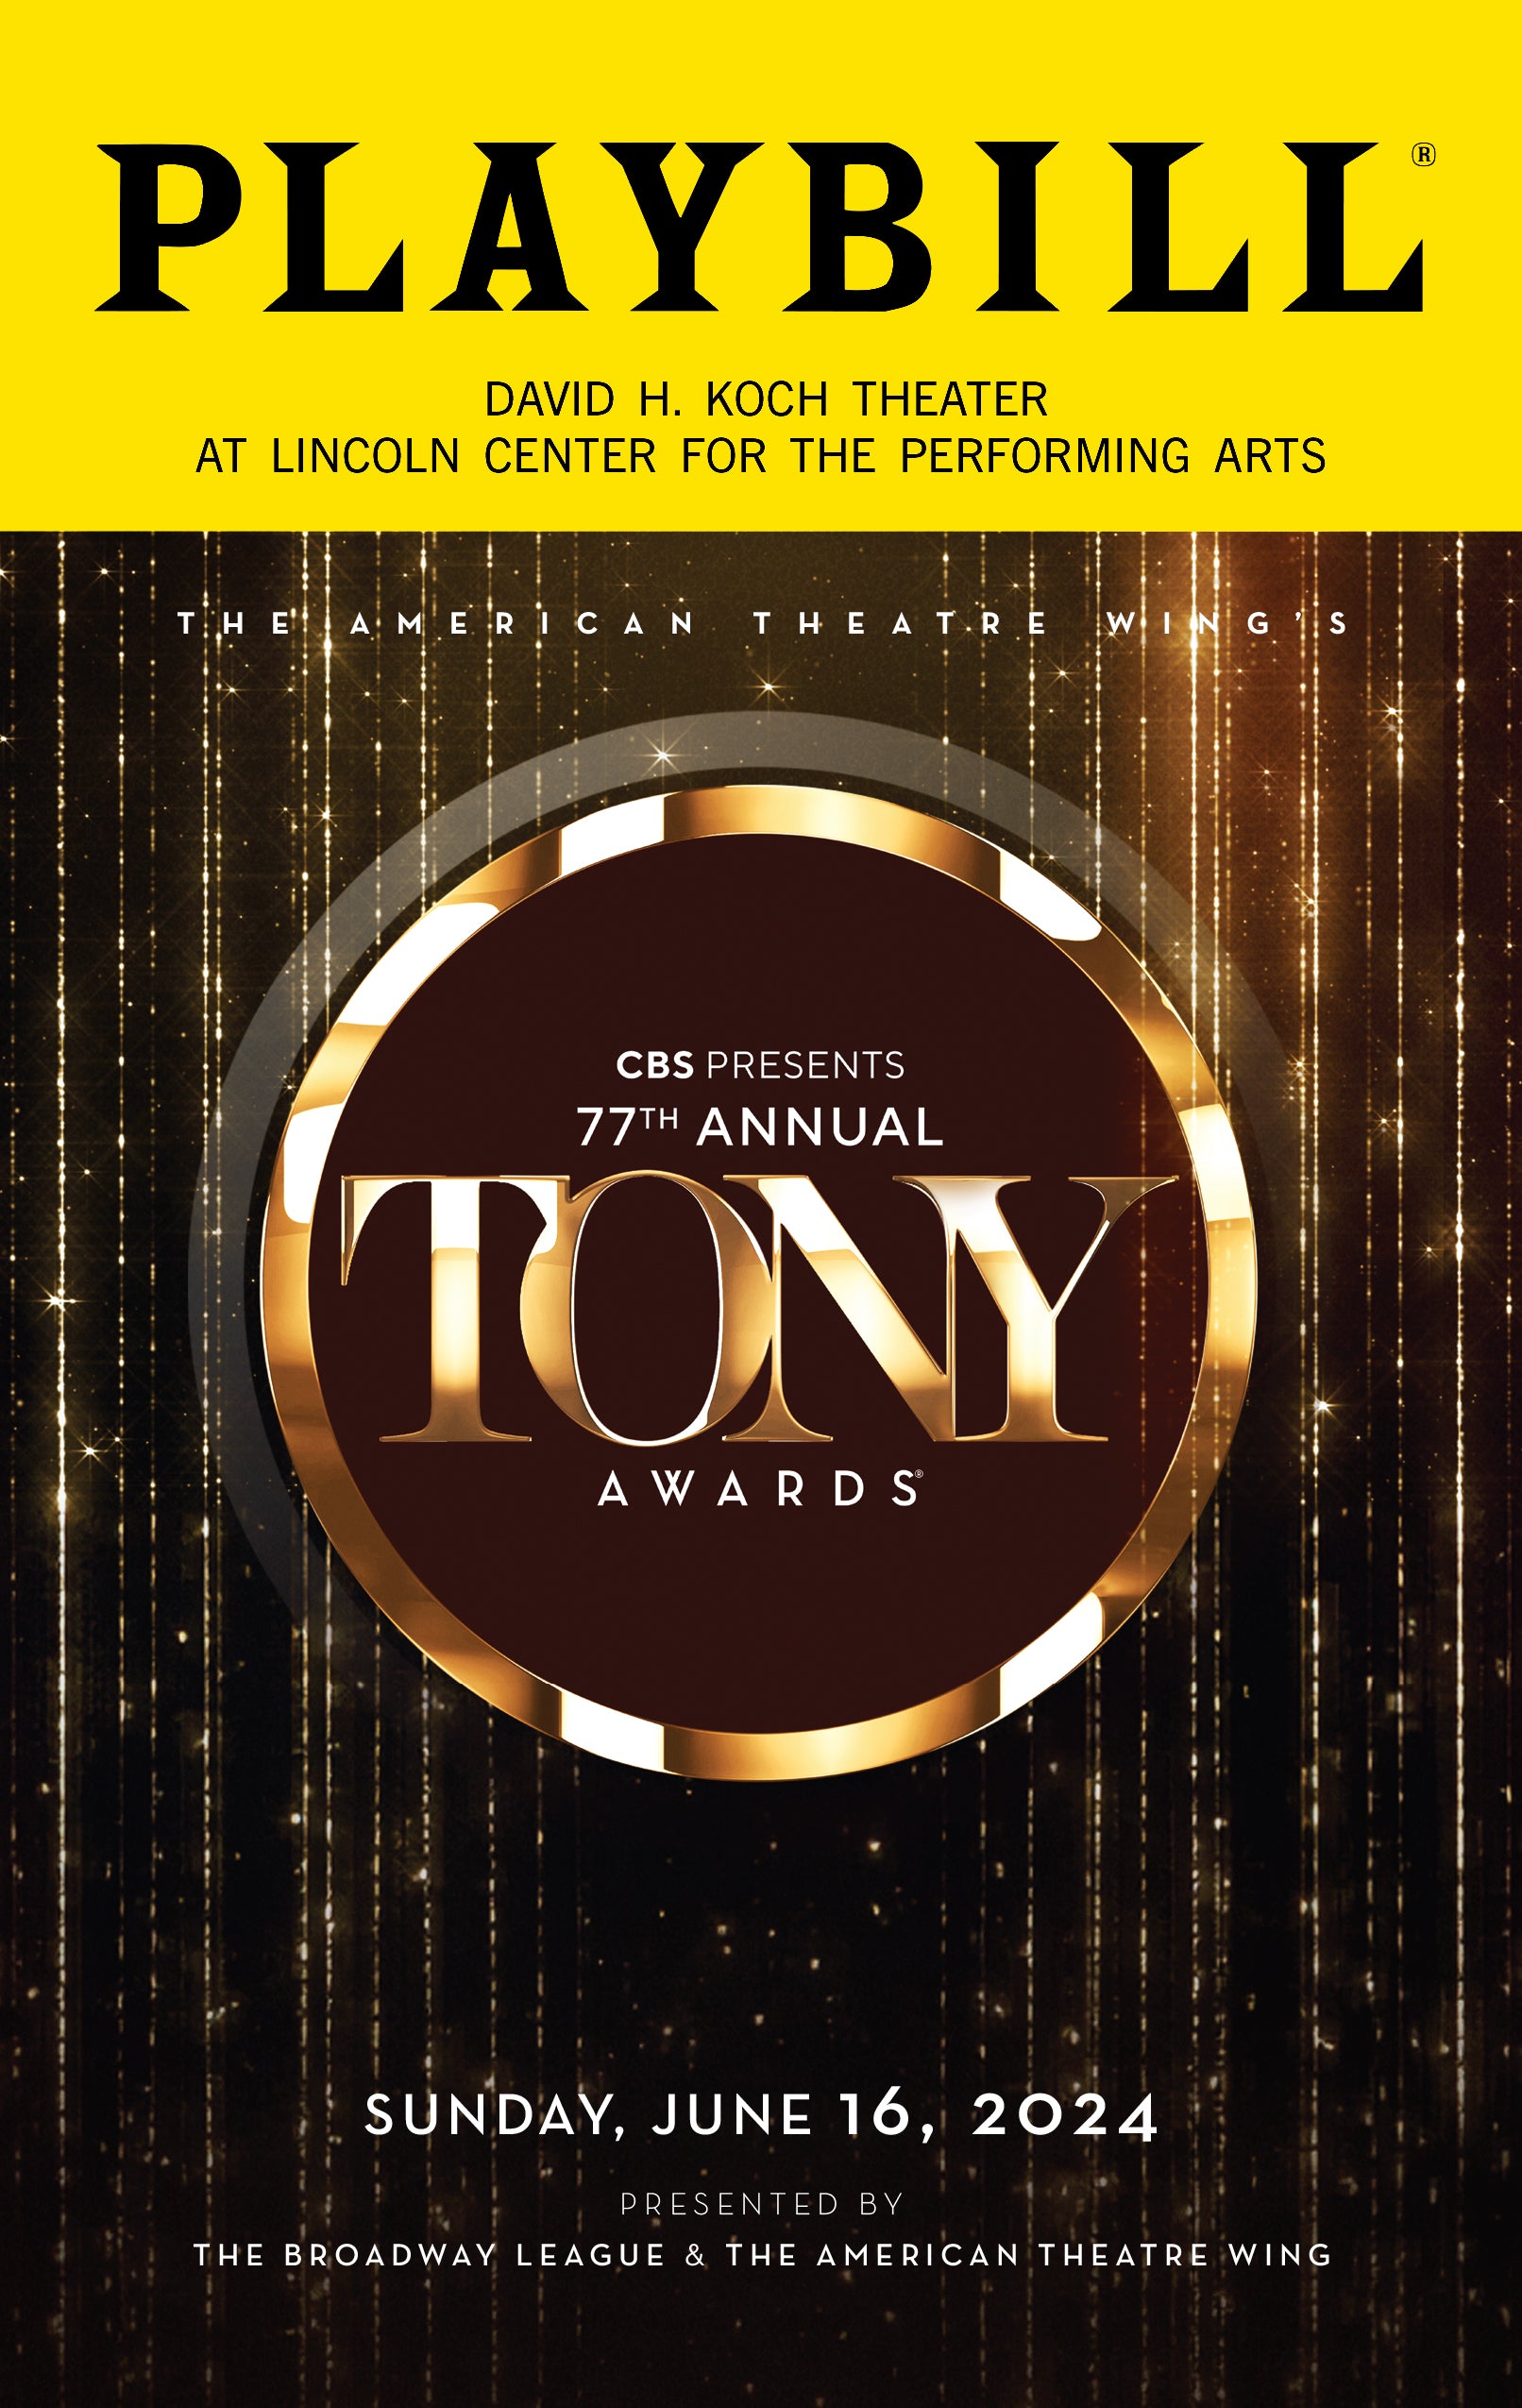 The 2024 Tony Awards Playbill